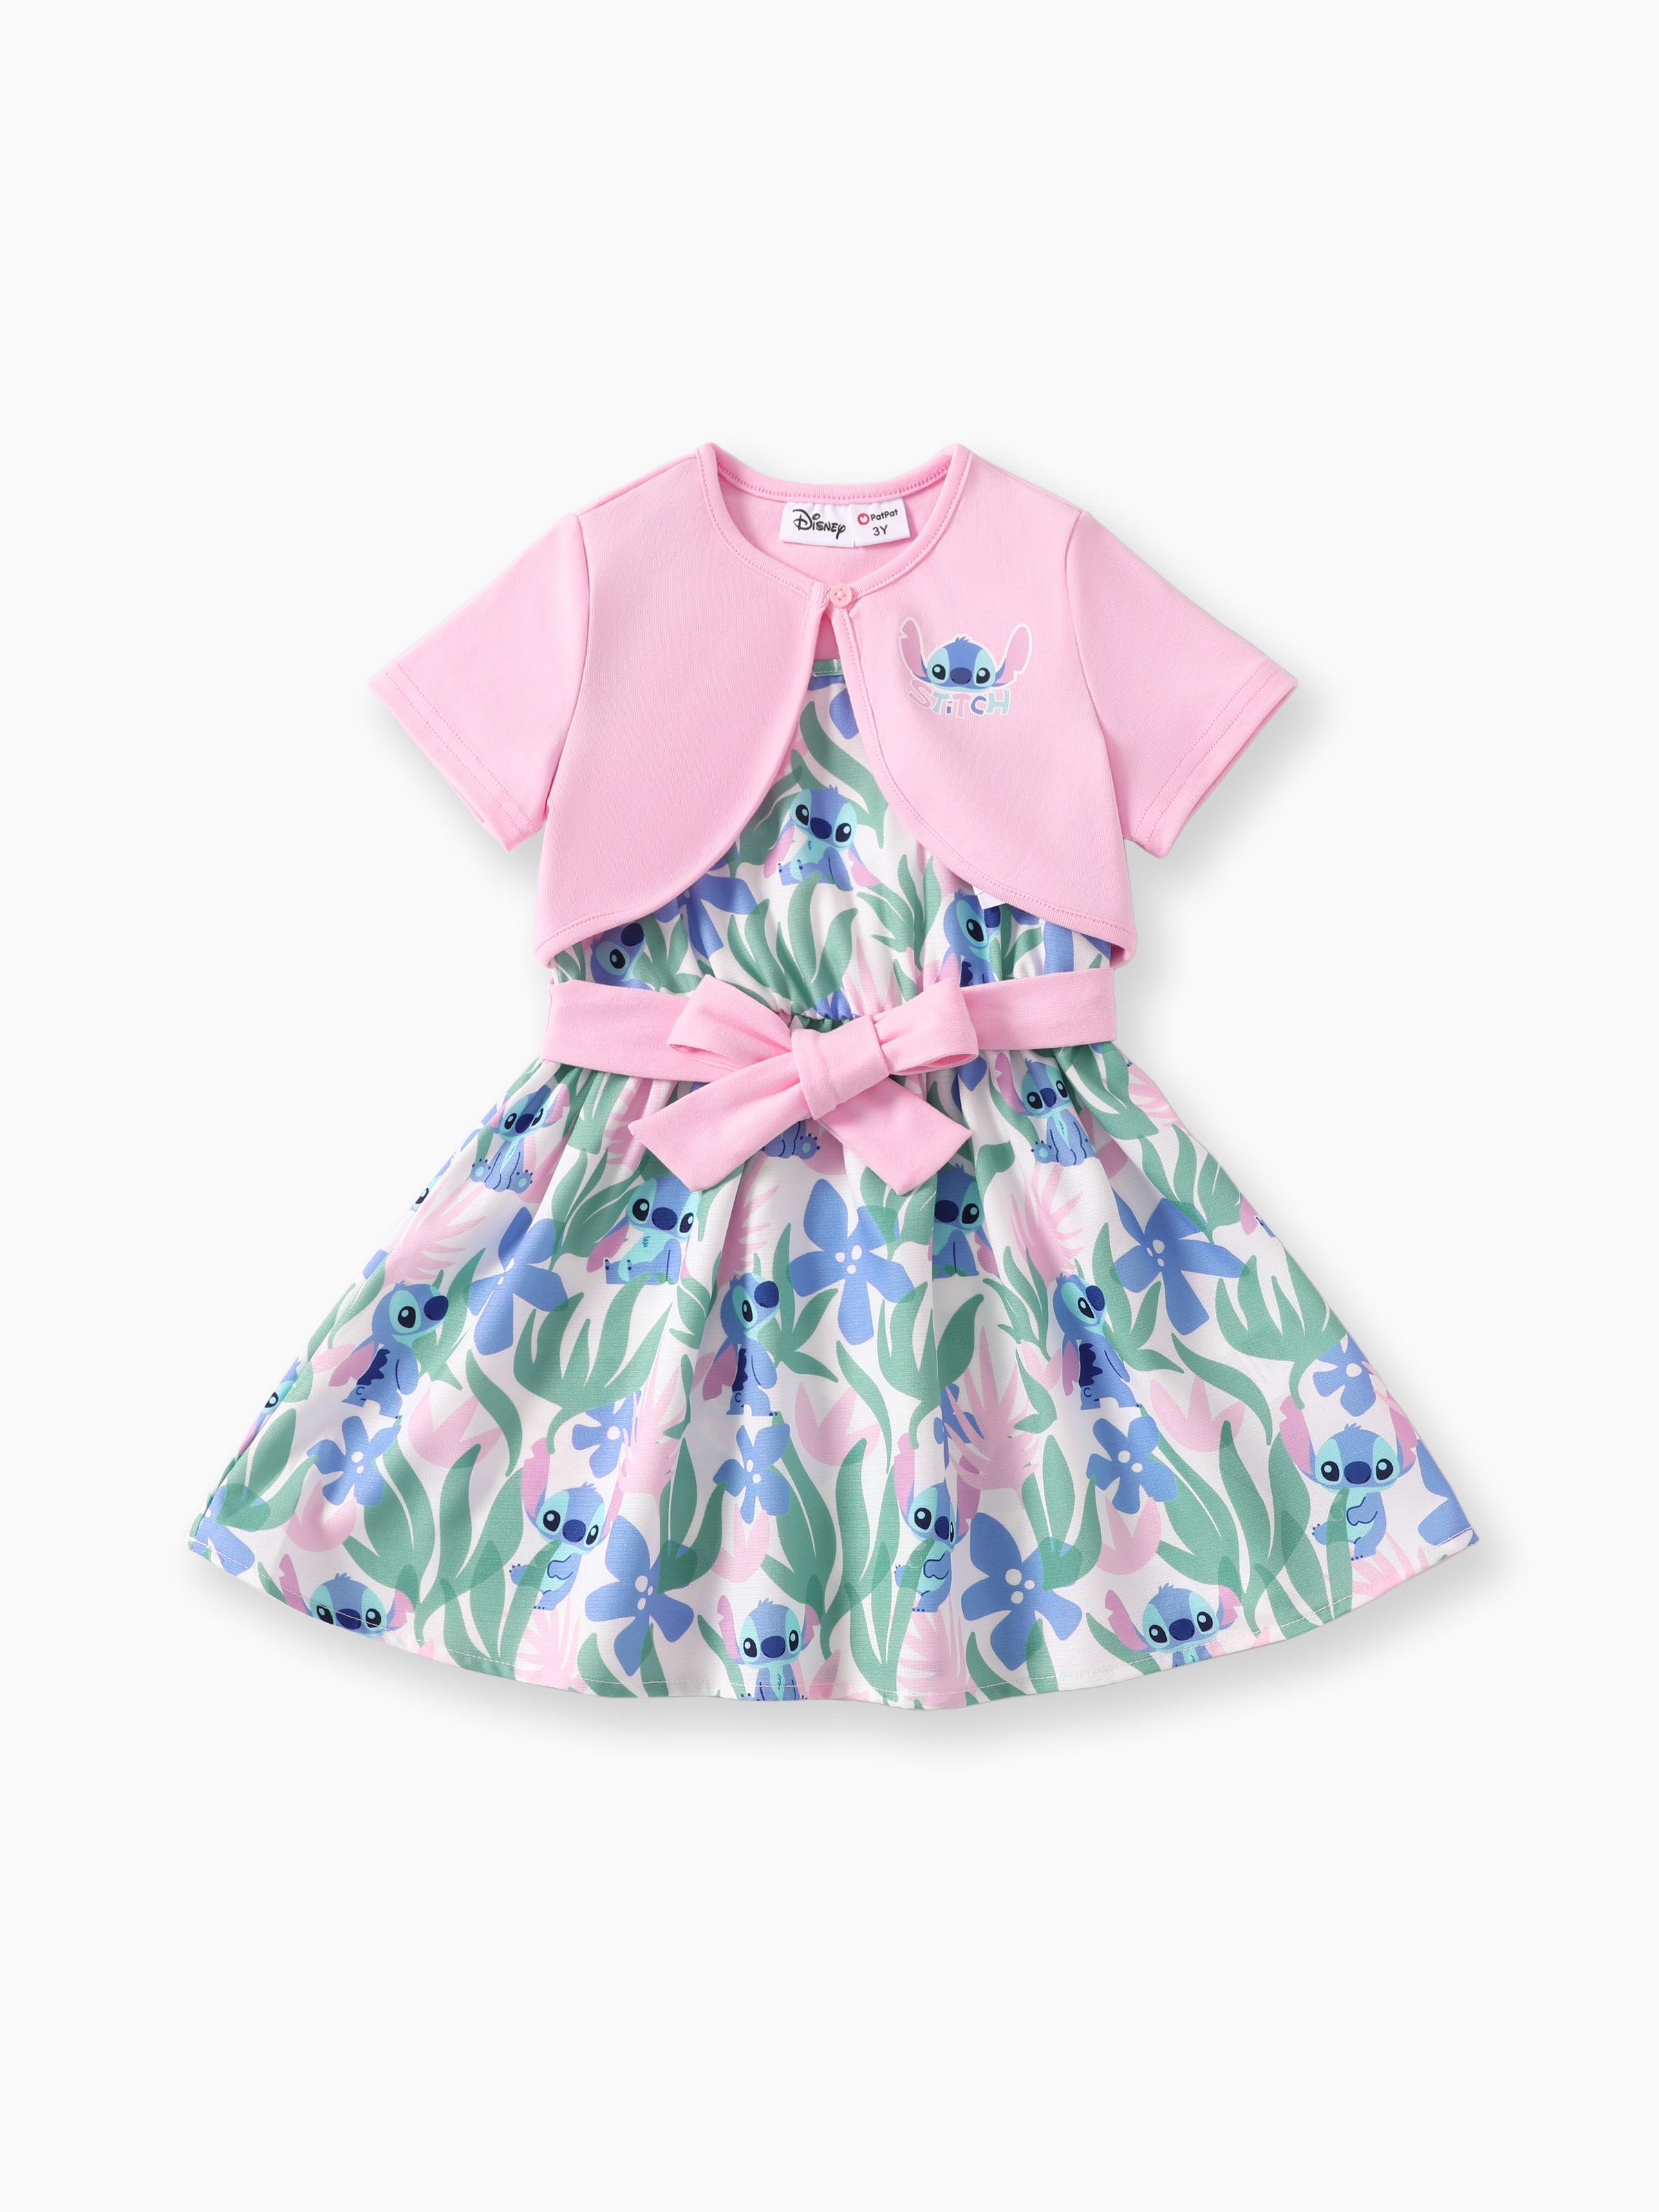 Disney Stitch Toddler Girls 2件粉紅色棉質短袖開衫搭配植物圖案無袖蝴蝶結腰部無袖連衣裙套裝